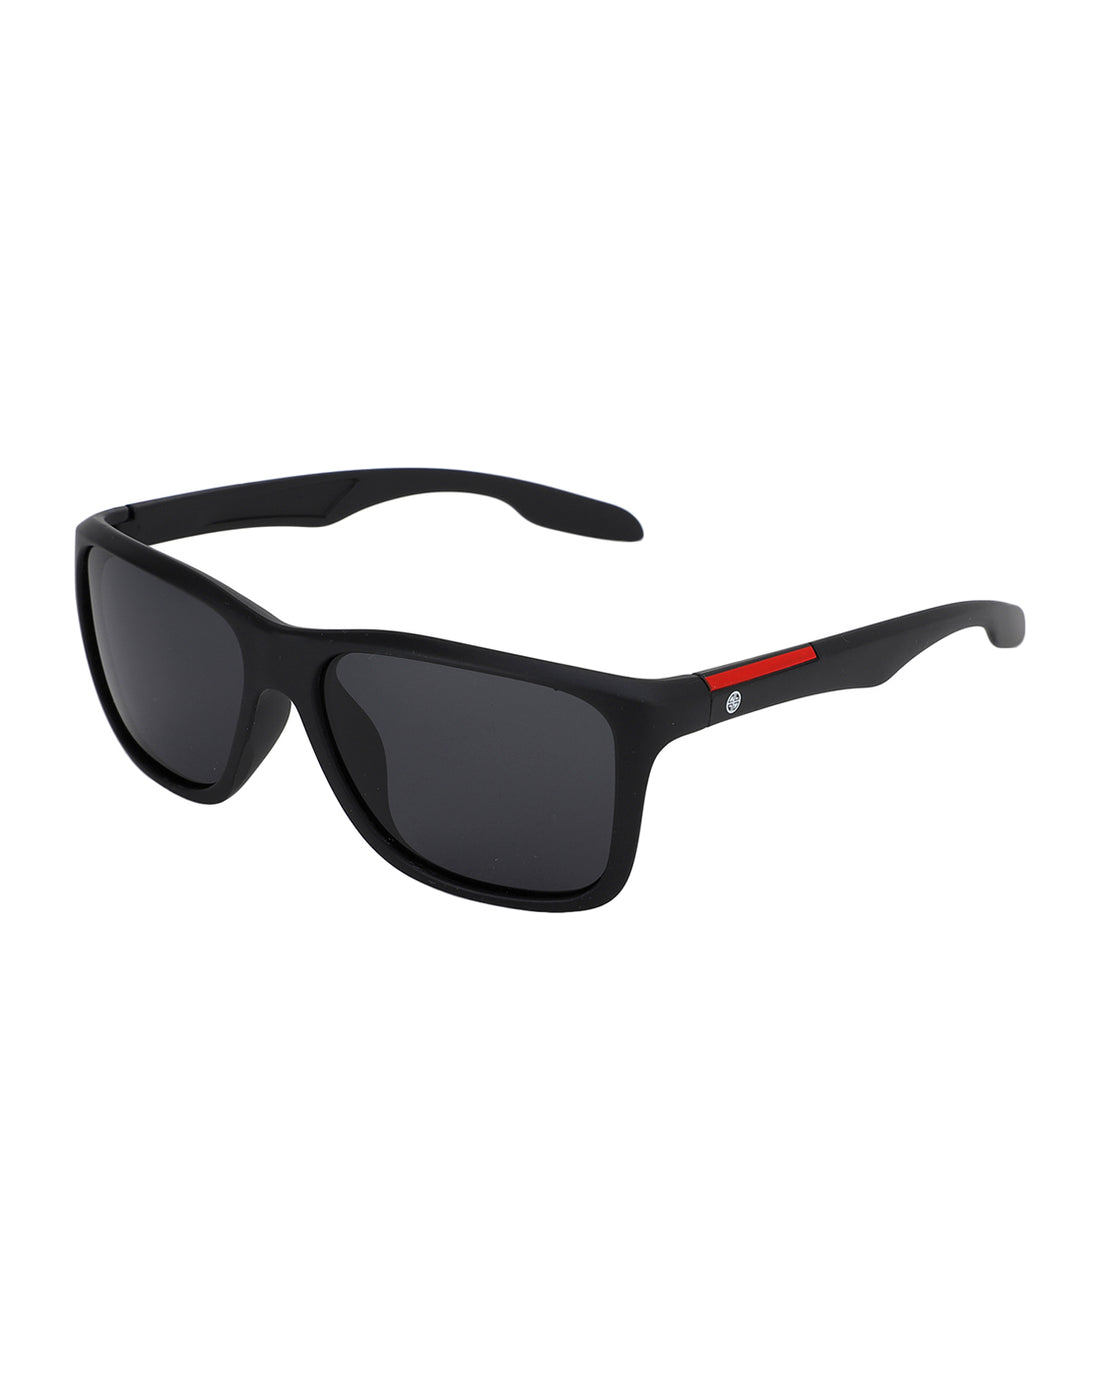 Carlton London Square UV Protected Rectangle Sunglasses For Men